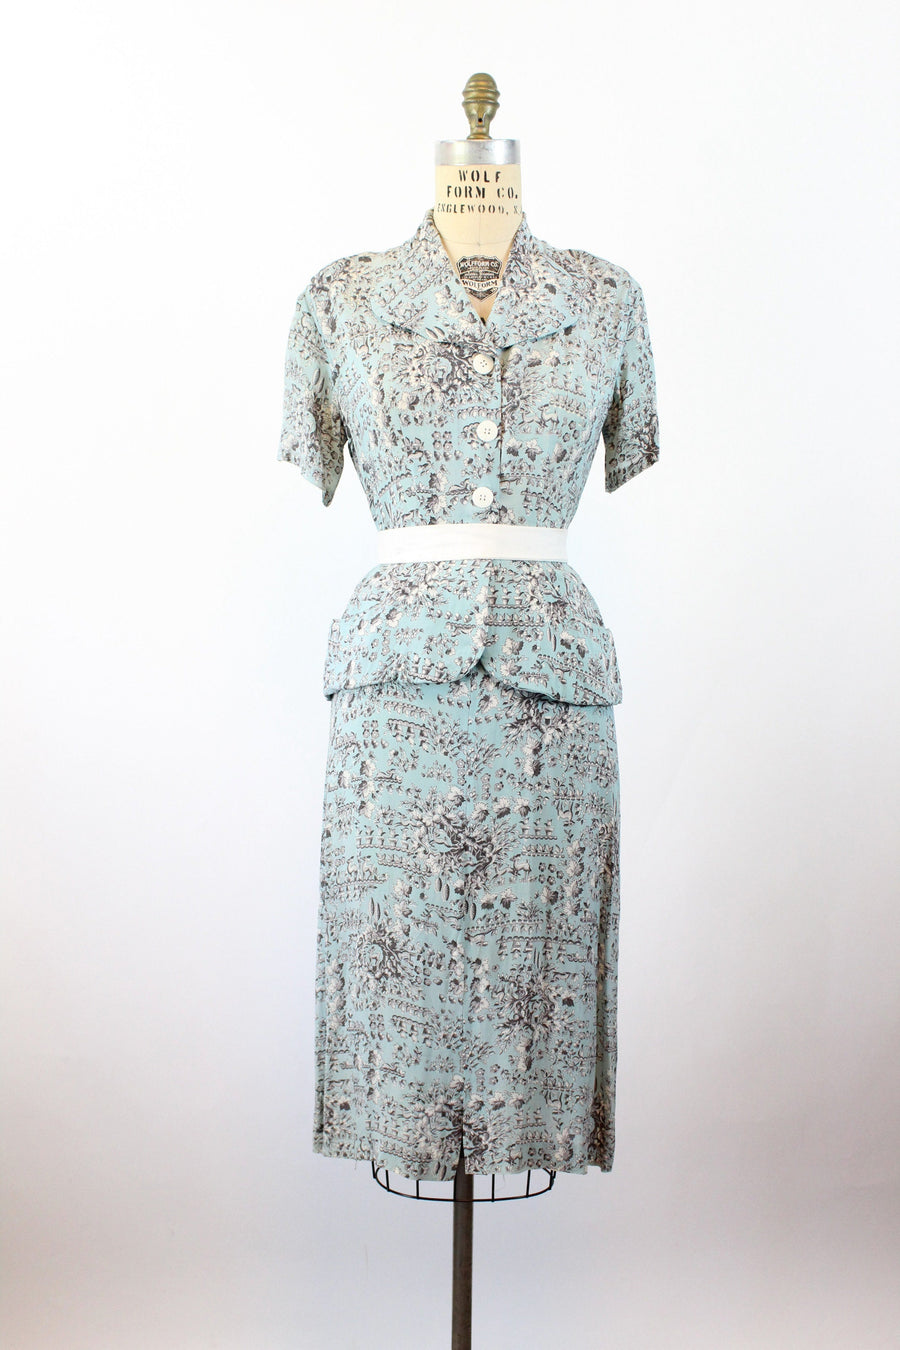 1940s FAWN DEER print novelty print dress medium | new summer